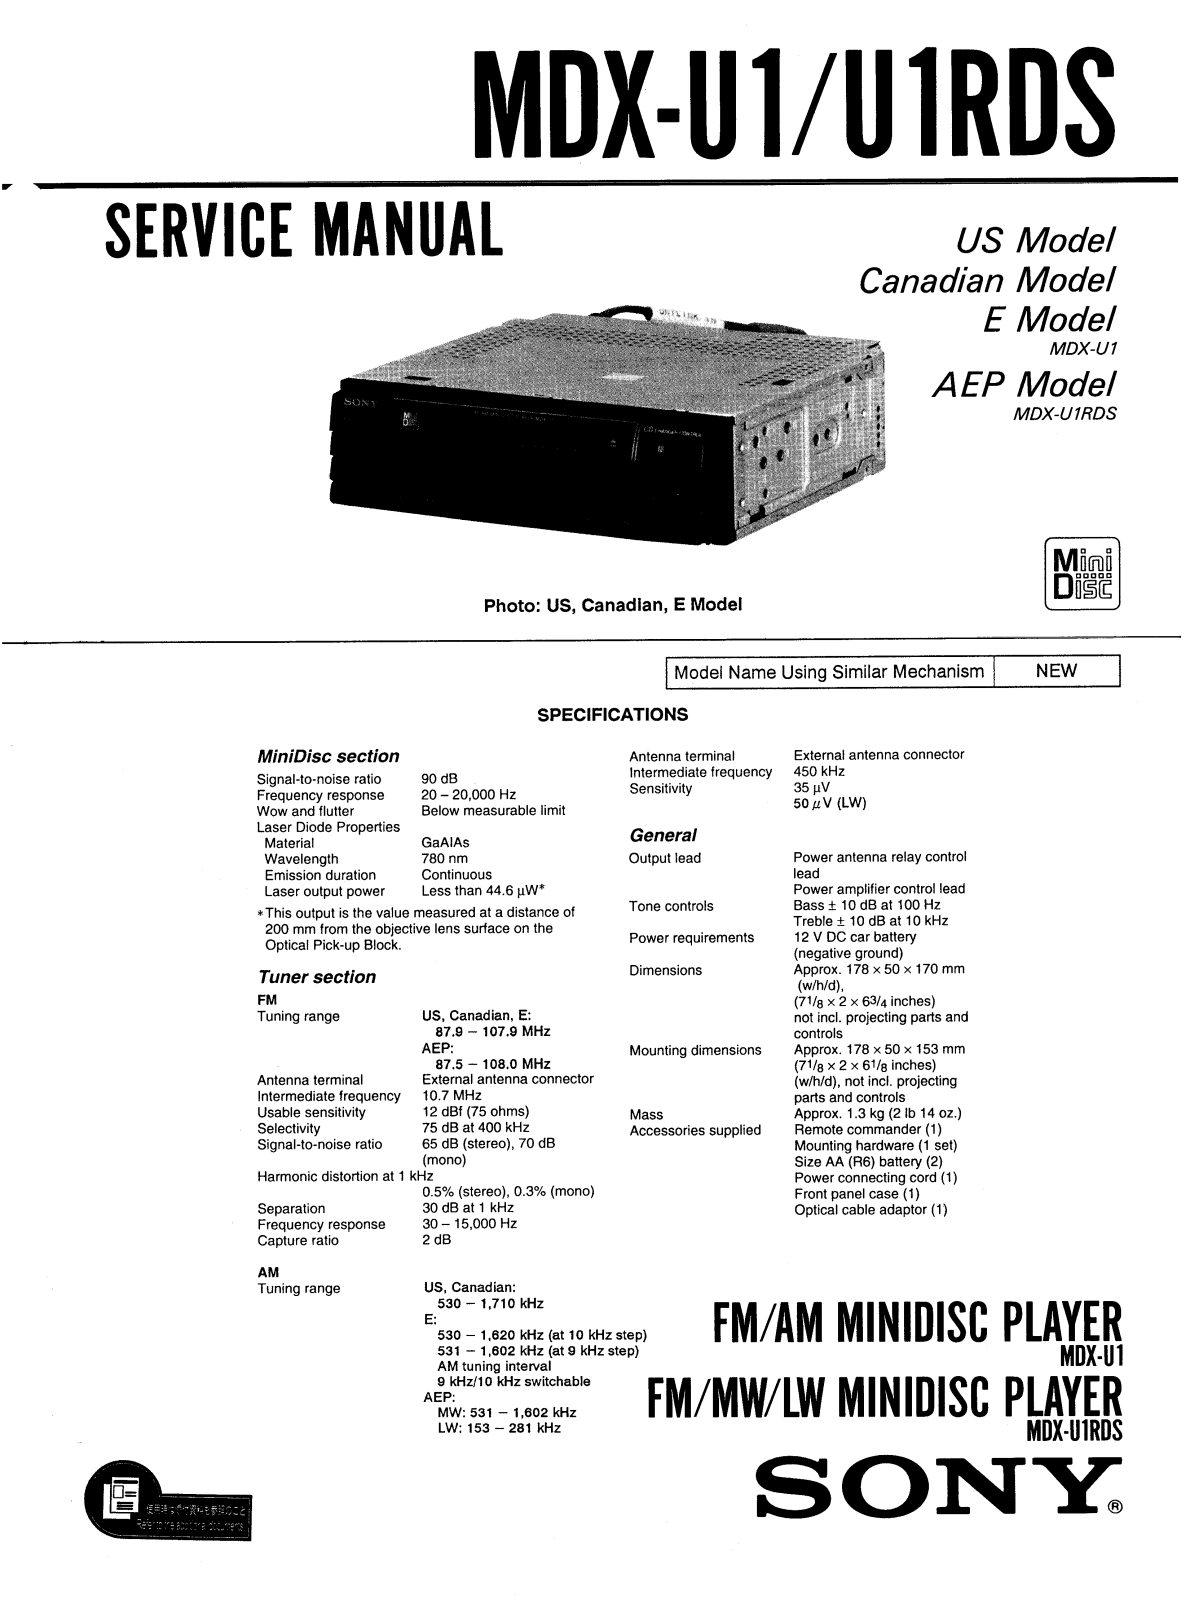 Sony MDX-U1, MDX-U1RDS Service Manual